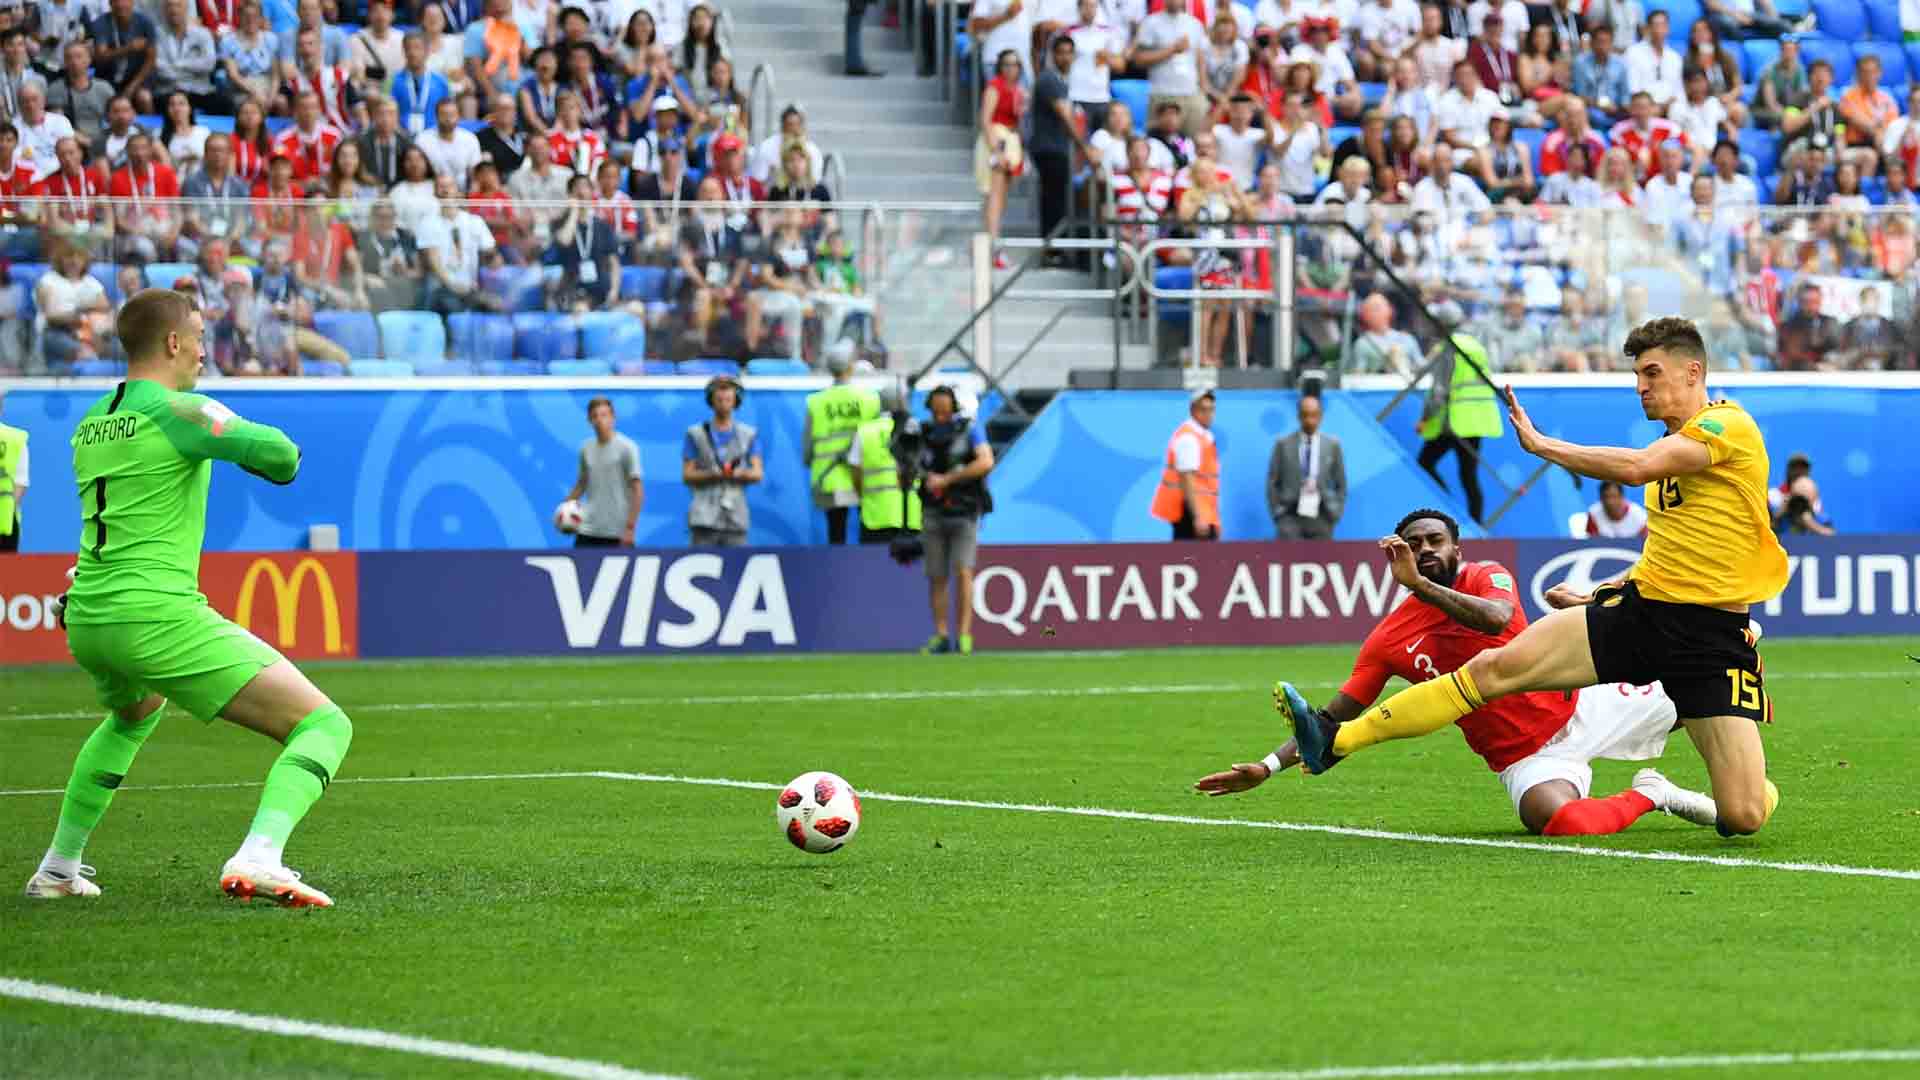 Bélgica derrota a Inglaterra y alcanza el tercer puesto, su mejor resultado en un Mundial